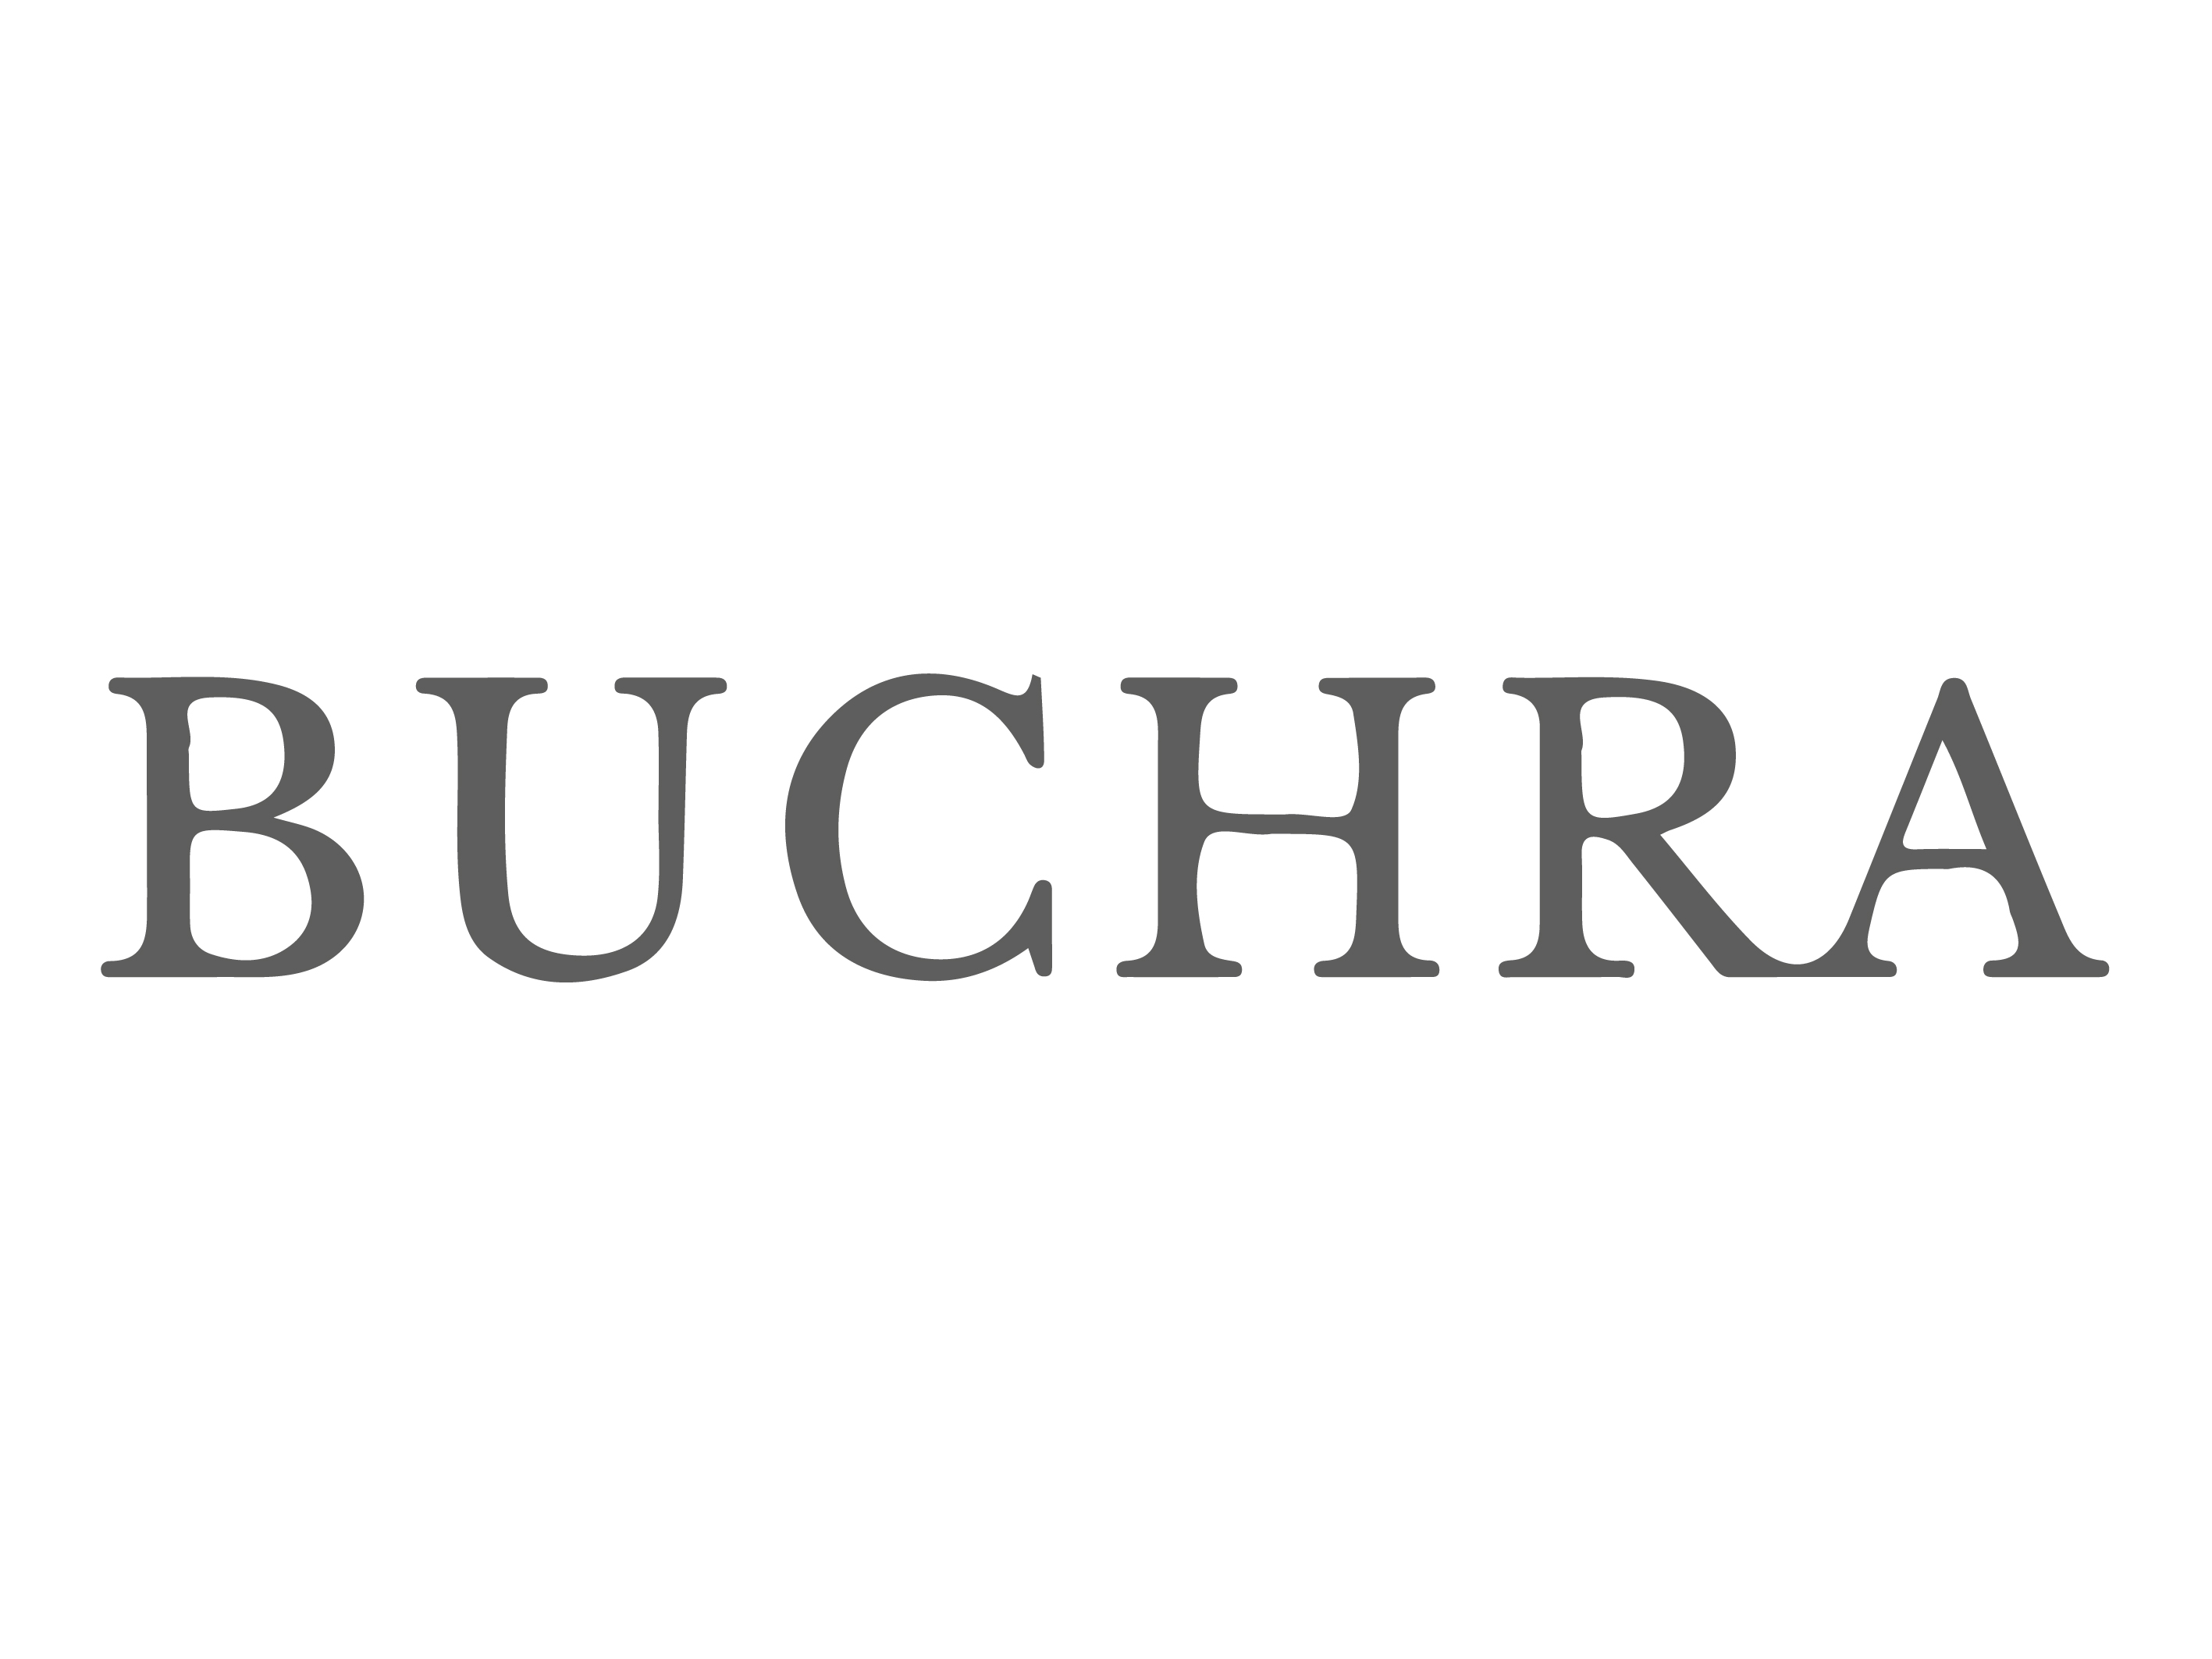 BUCHRA